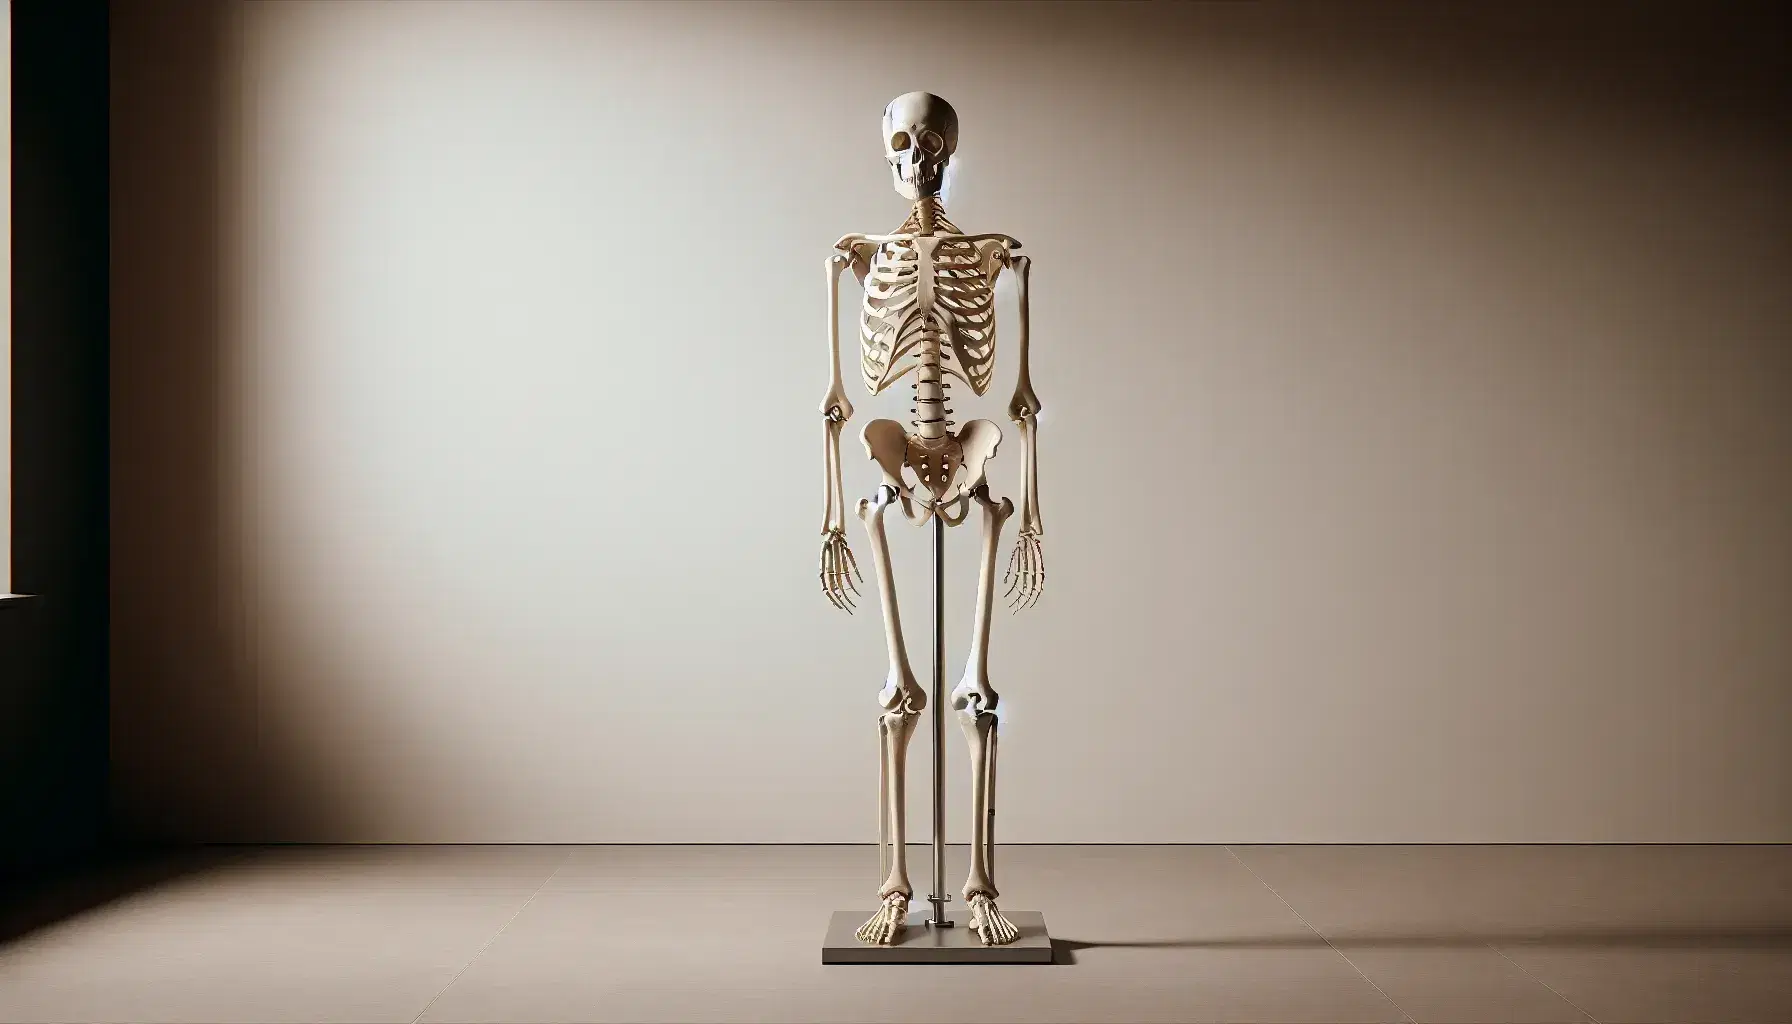 Esqueleto humano completo montado en soporte metálico, con brazos separados y palmas hacia adelante, sobre fondo neutro.